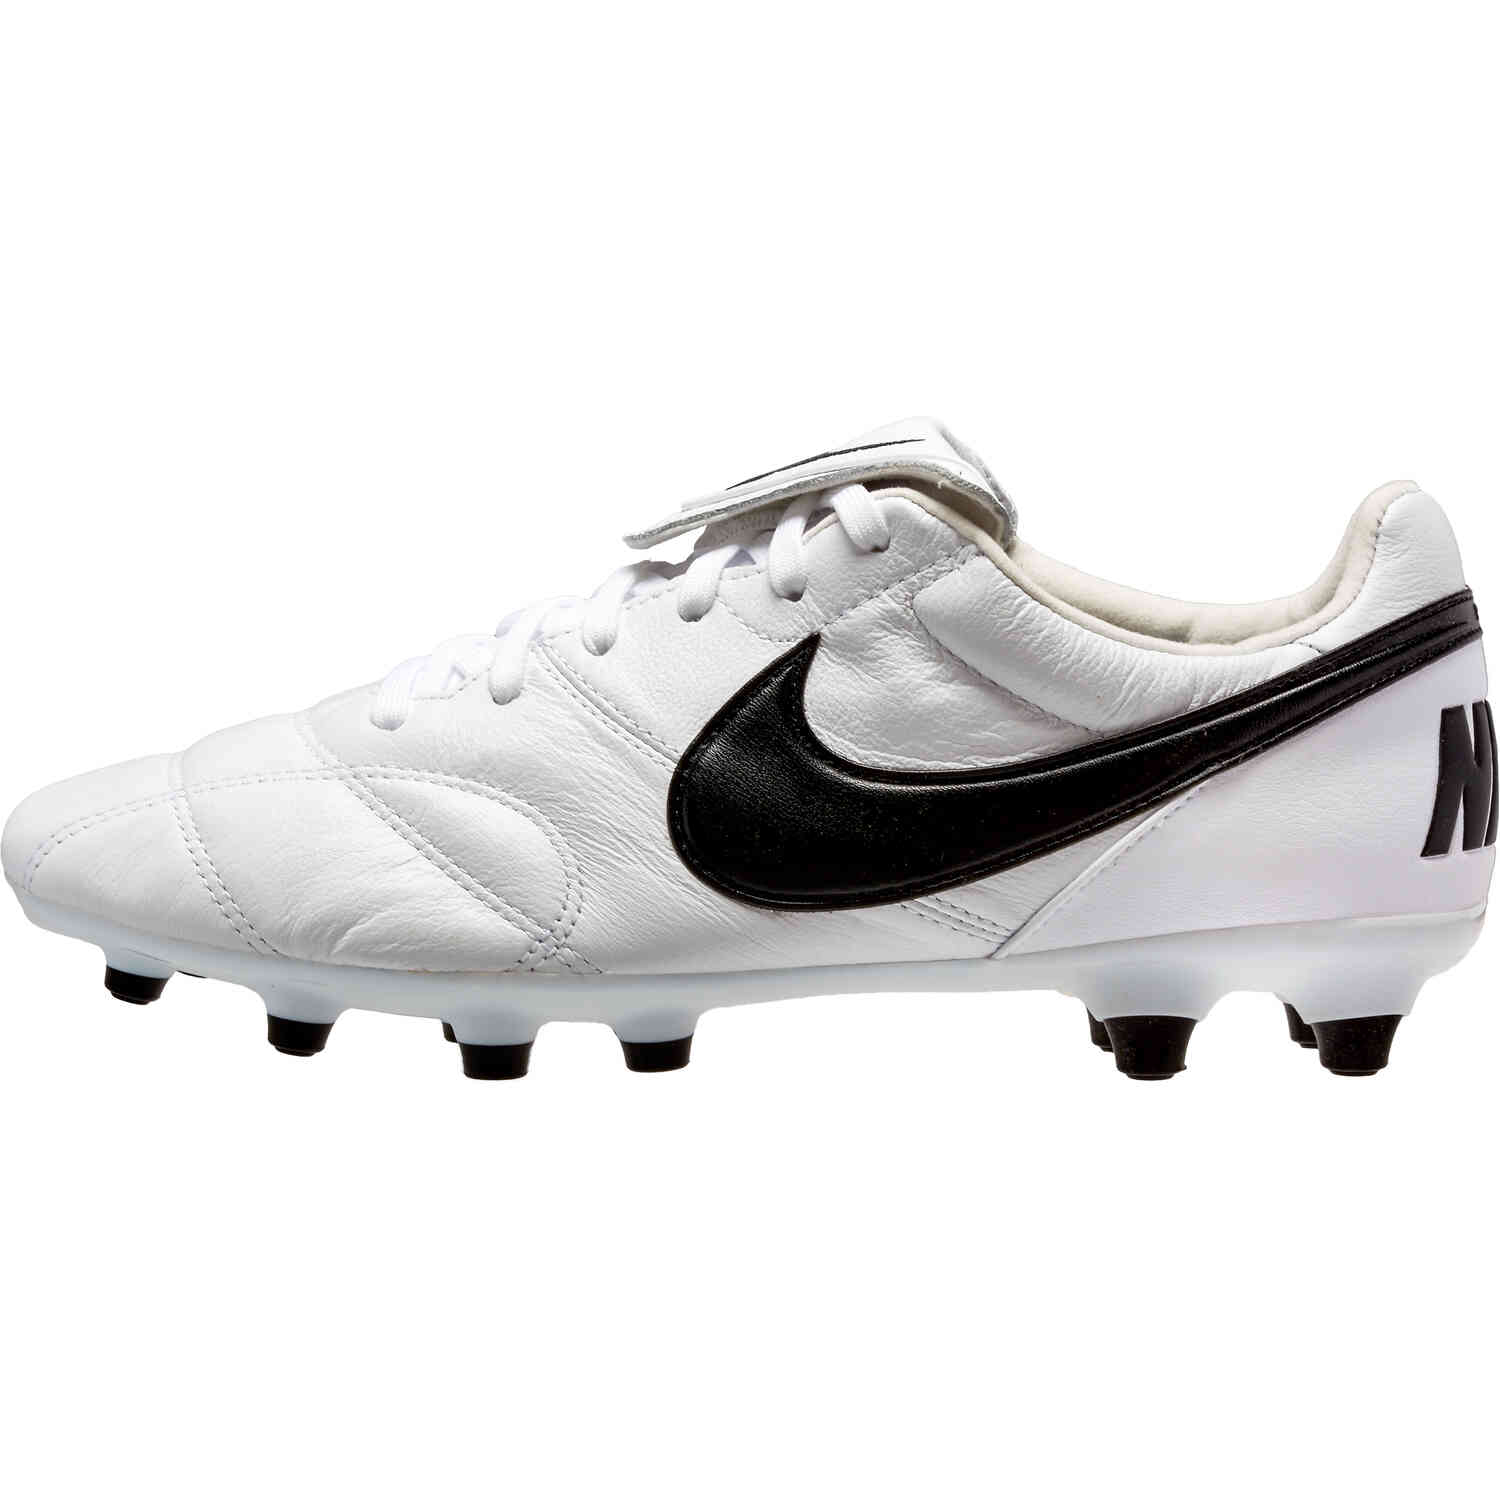 Nike Premier II - White - Soccer Master